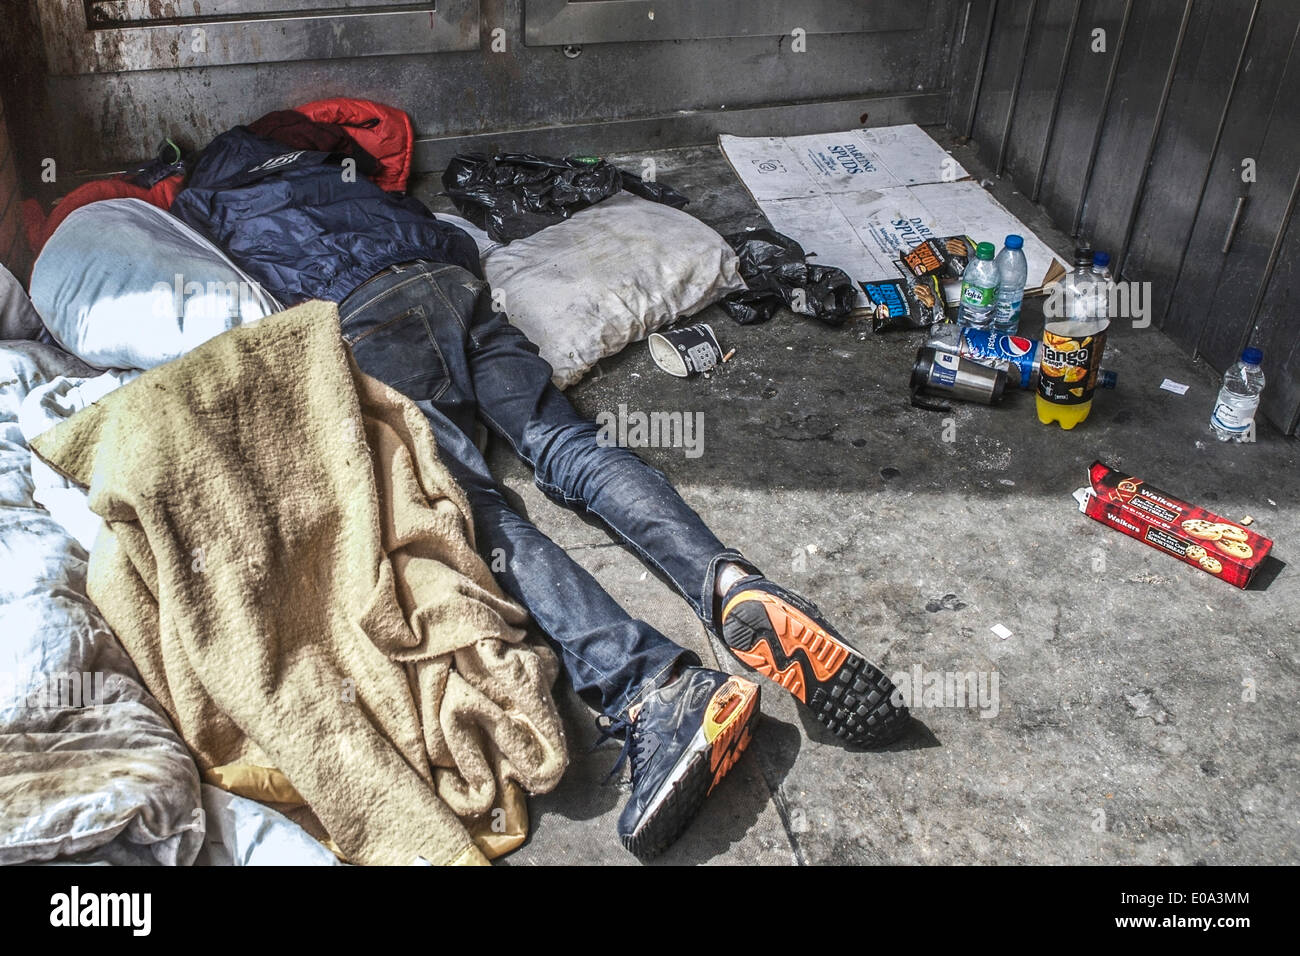 Tramp schlafen in einem Türrahmen, mit Decke mit Müll umgeben; in London, UK. Obdachlose in Großbritannien. Stockfoto